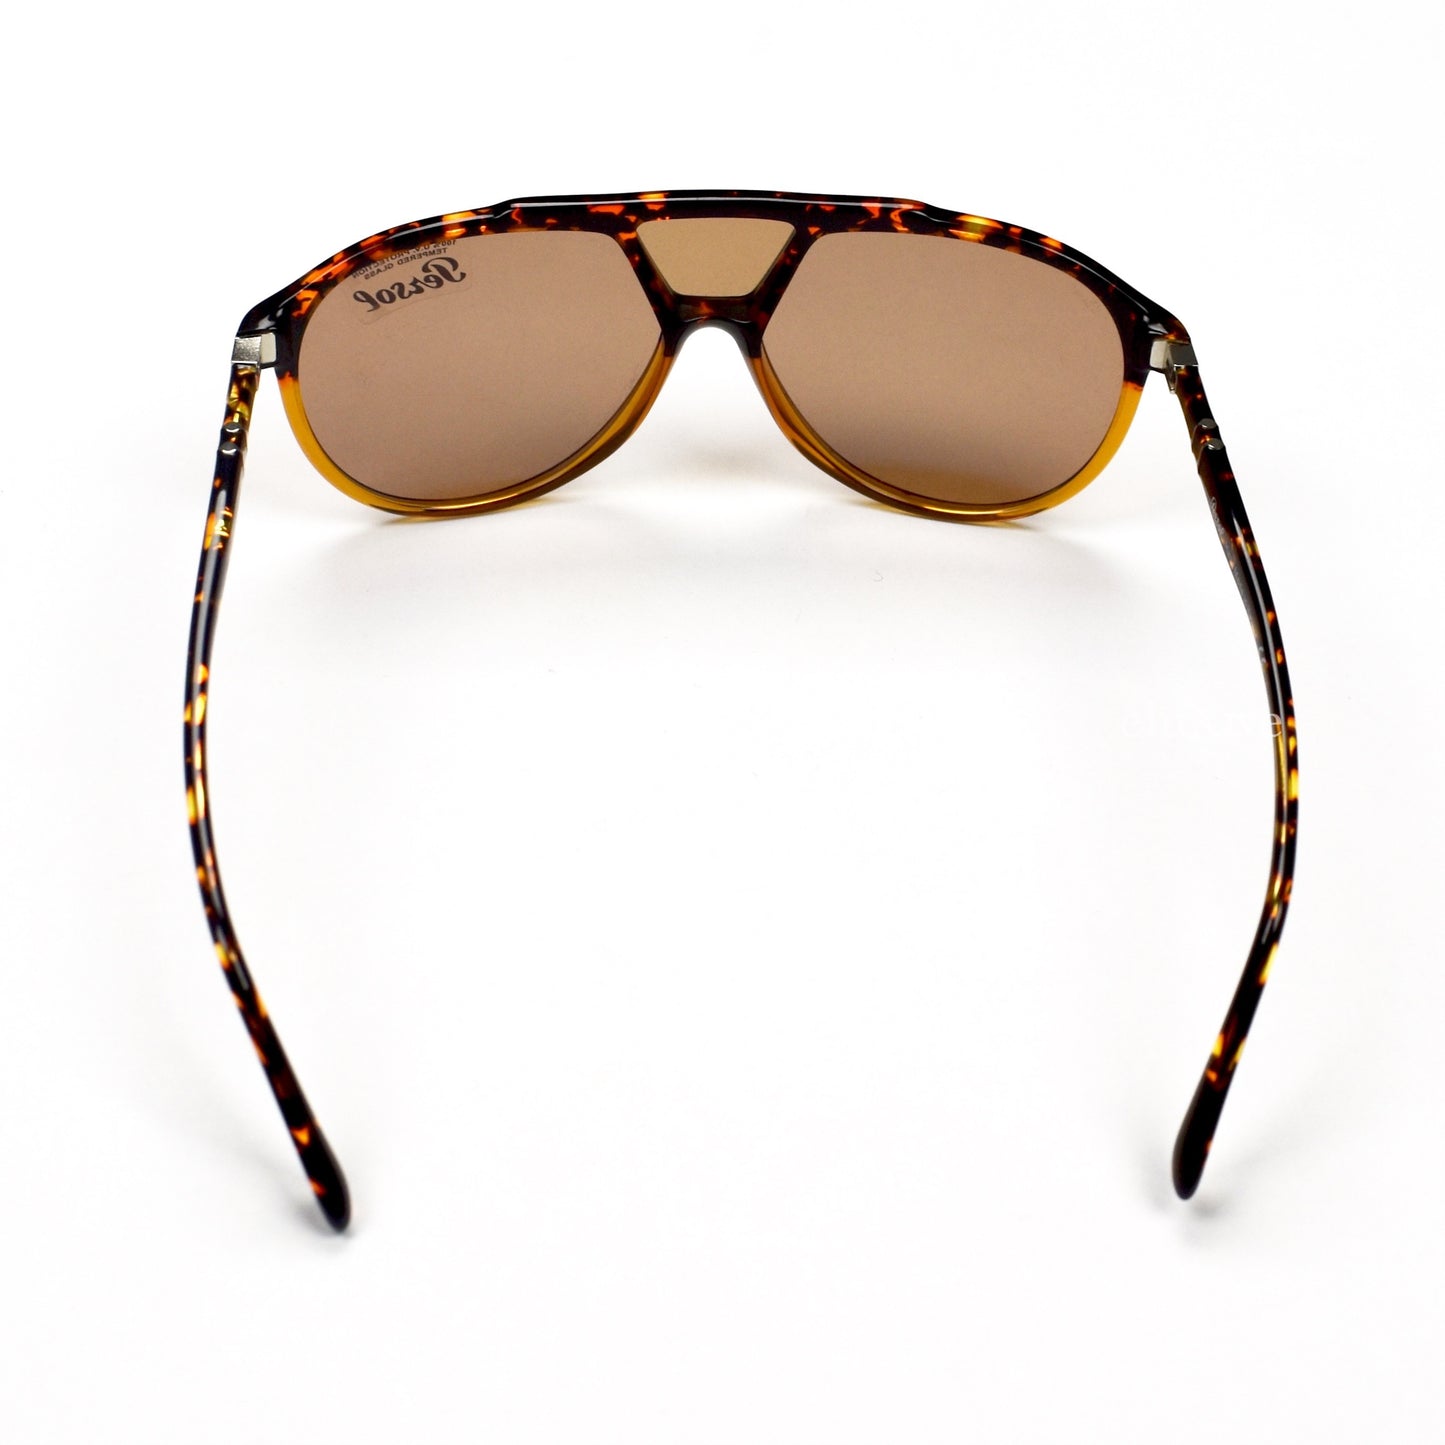 Persol - 3217-S Vintage Pilot Sunglasses (Tortoise)